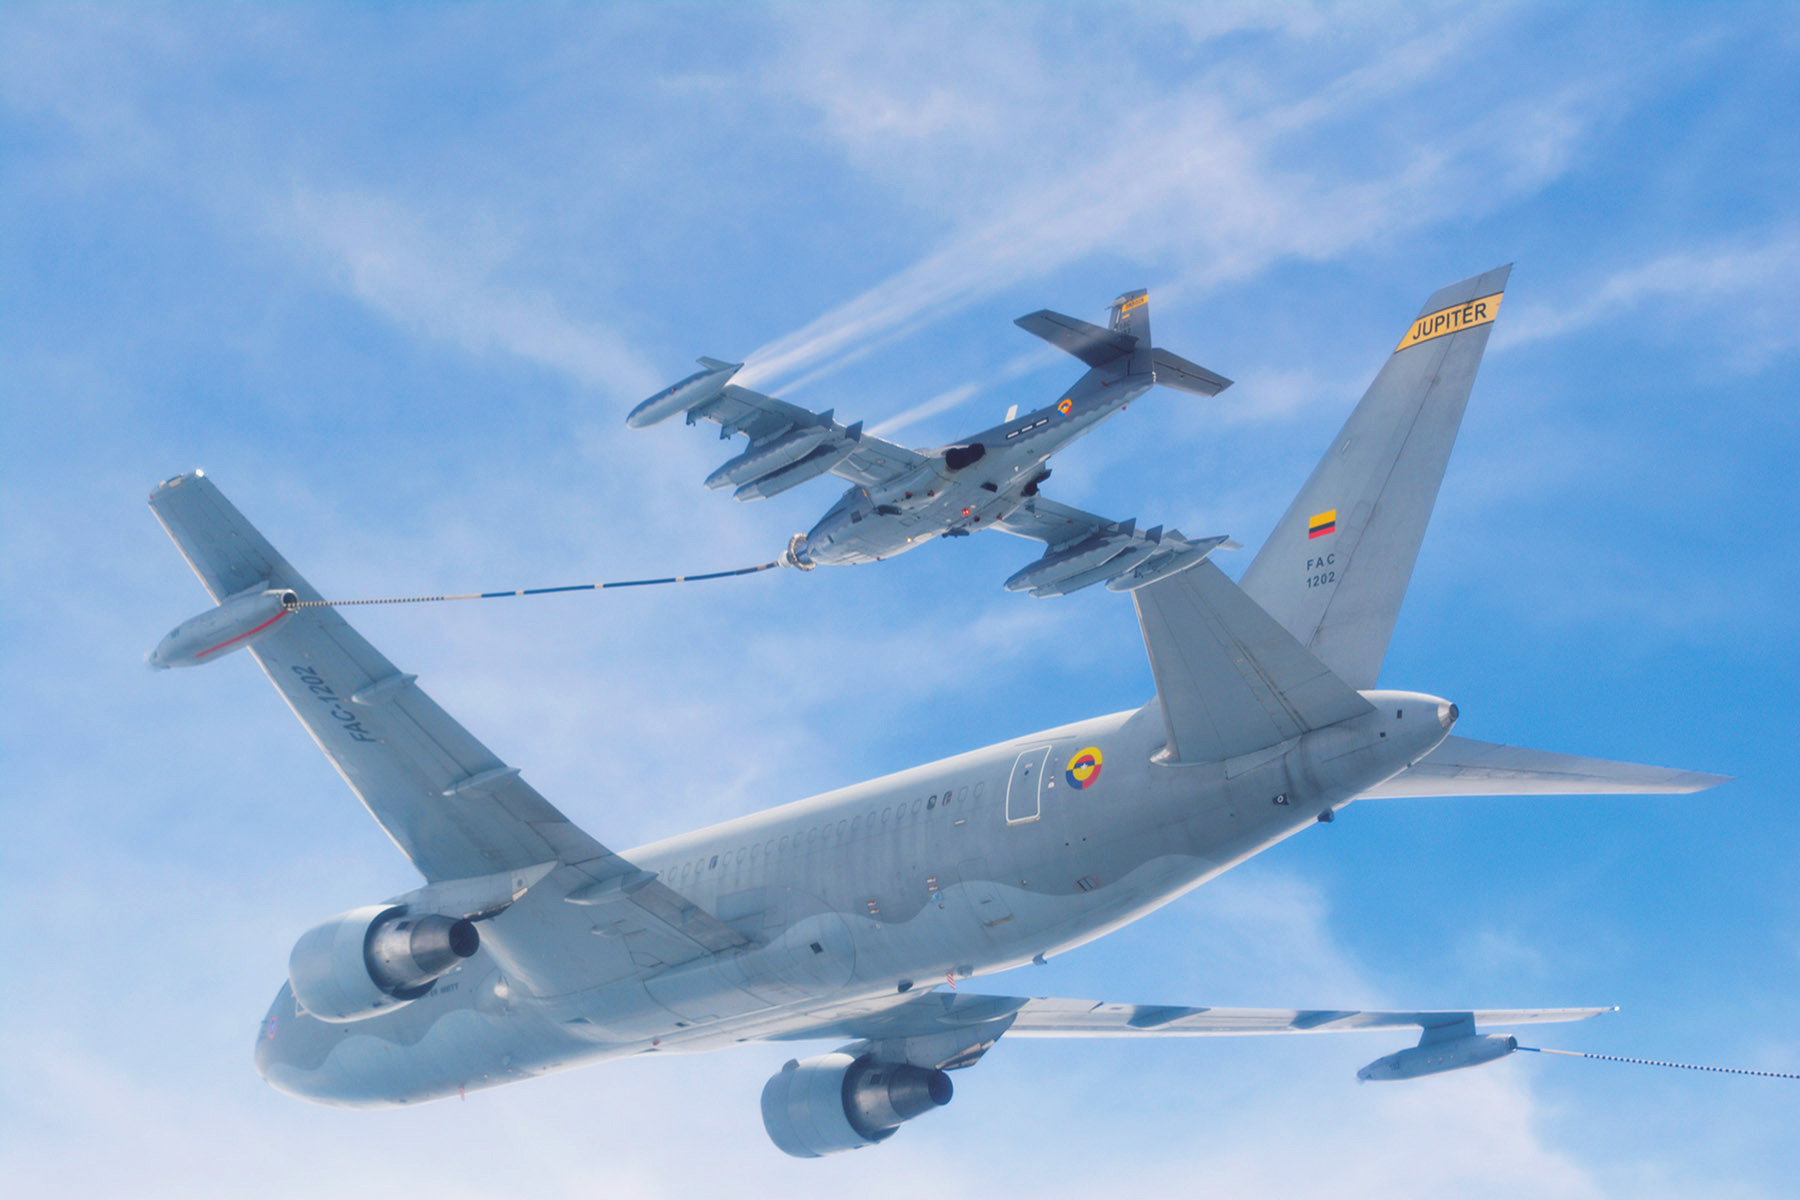 El reabastecimiento en vuelo es una de las maniobras más dinámicas, complejas y riesgosas de la operación aérea, que inició en el país en 1991, con el objetivo de aumentar la autonomía y el alcance de los aviones militares.